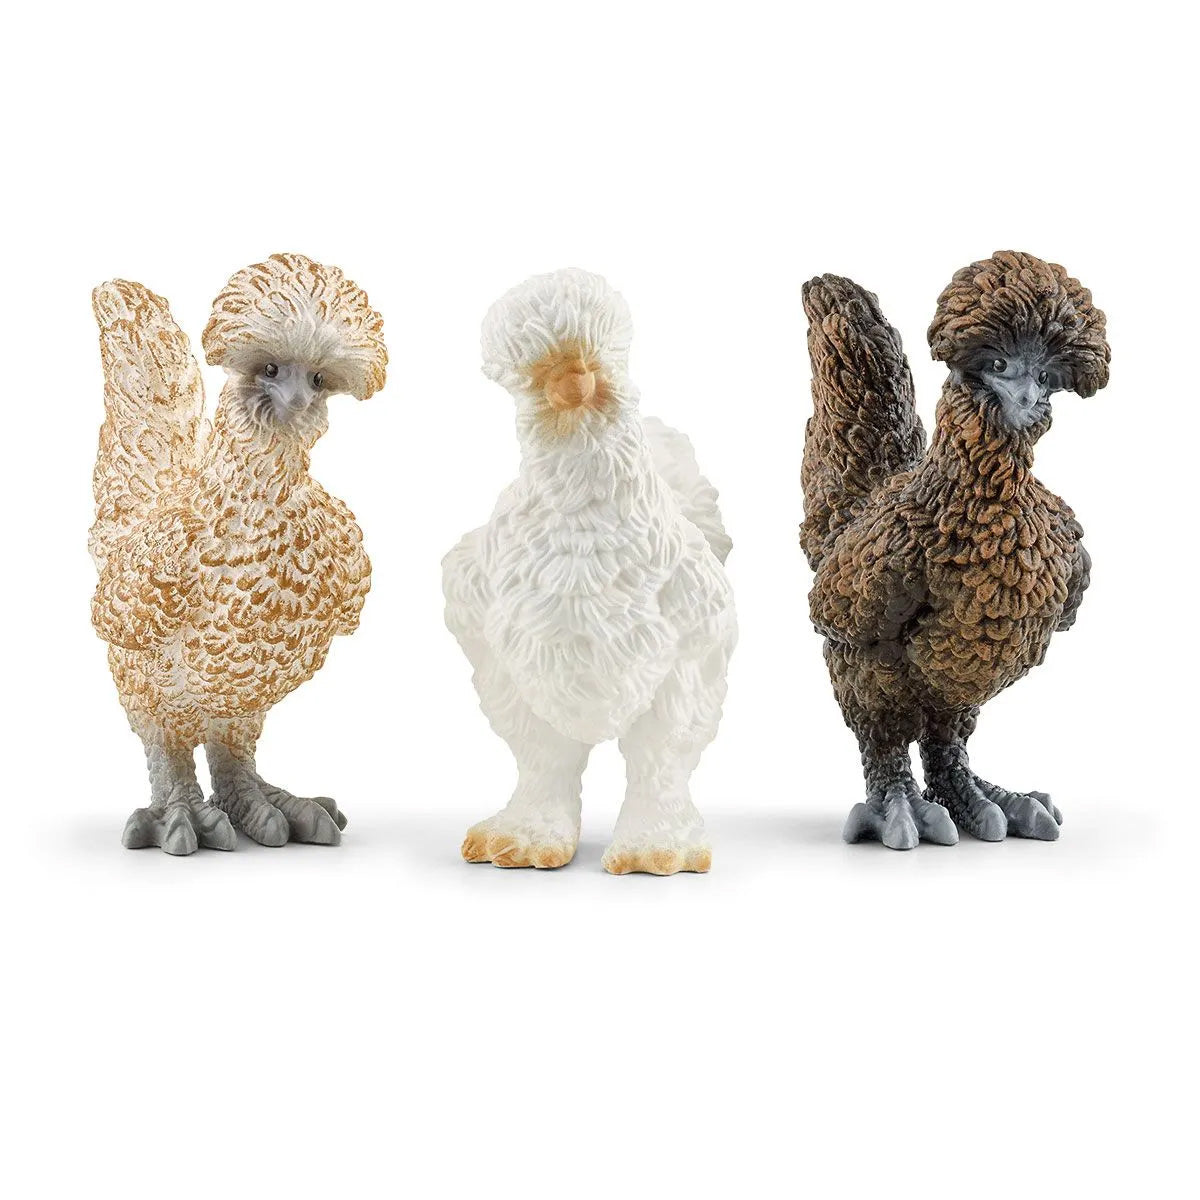 Schleich Farm World Chicken Friends with 3 different chicken Toy Figurines